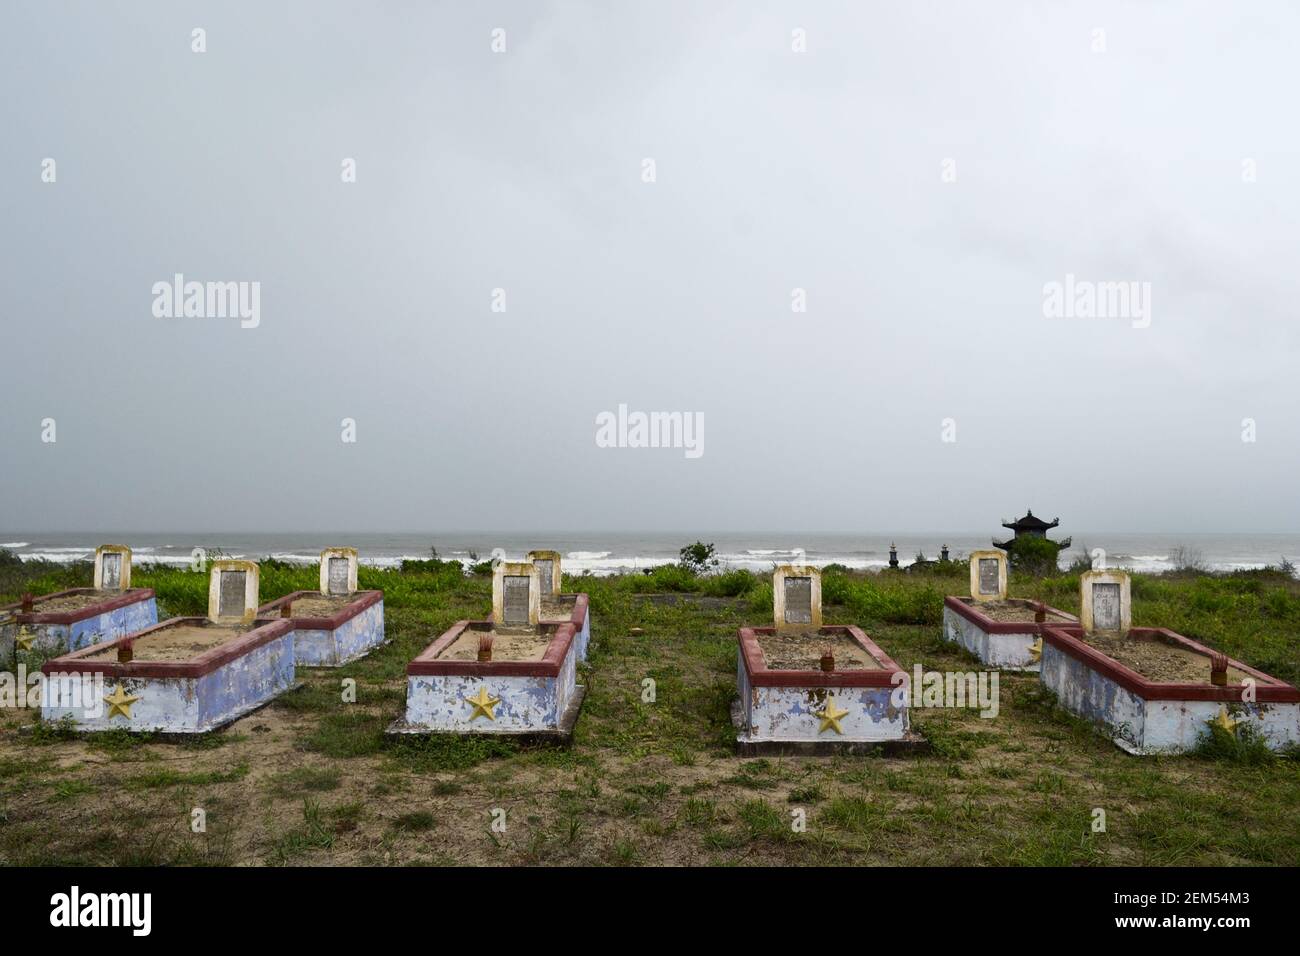 Cimetière de la guerre du Vietnam avec de vieilles pierres tombales altérées près d'une plage à Lang Co. Old inhumation militaire sur la côte près de la mer, Banque D'Images